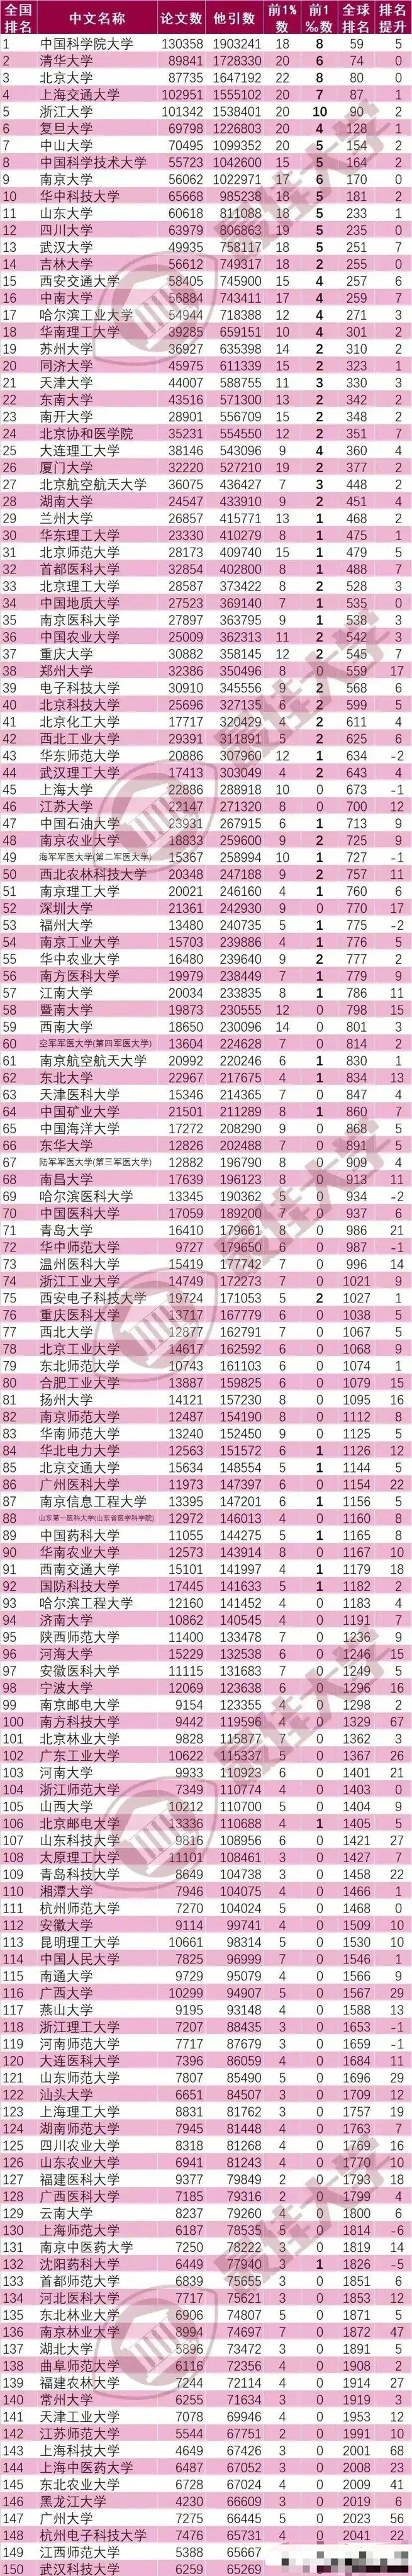 ESI150强大学排名: 国科大第一, 同济大学低于苏州大学, 武汉科技大学垫底